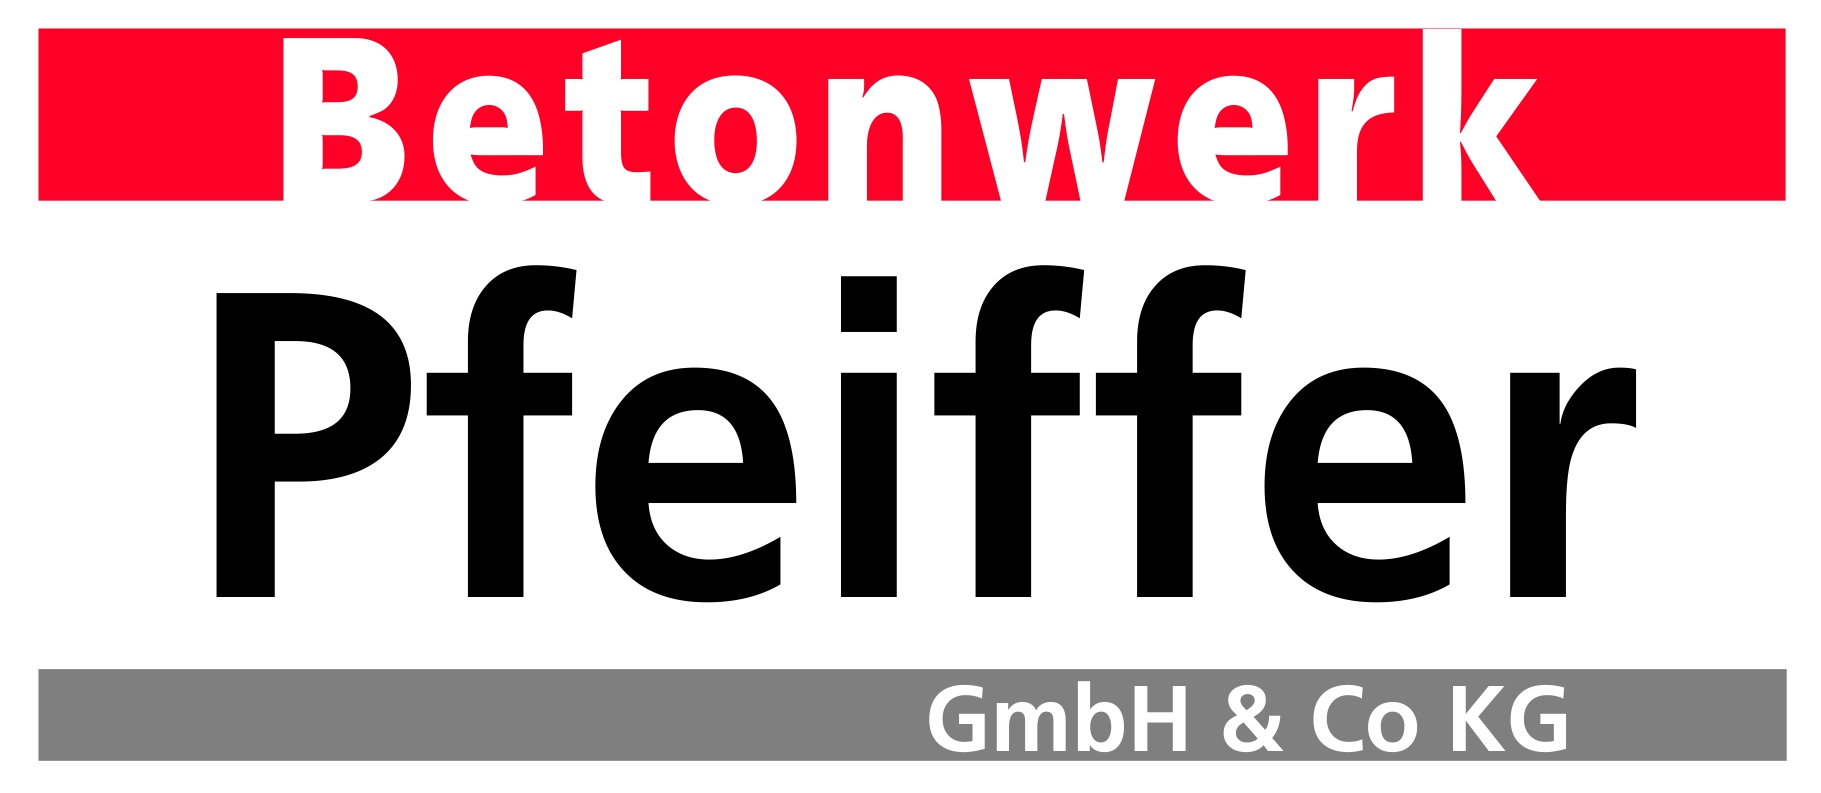 Logo Pfeiffer Betonwerk 022014